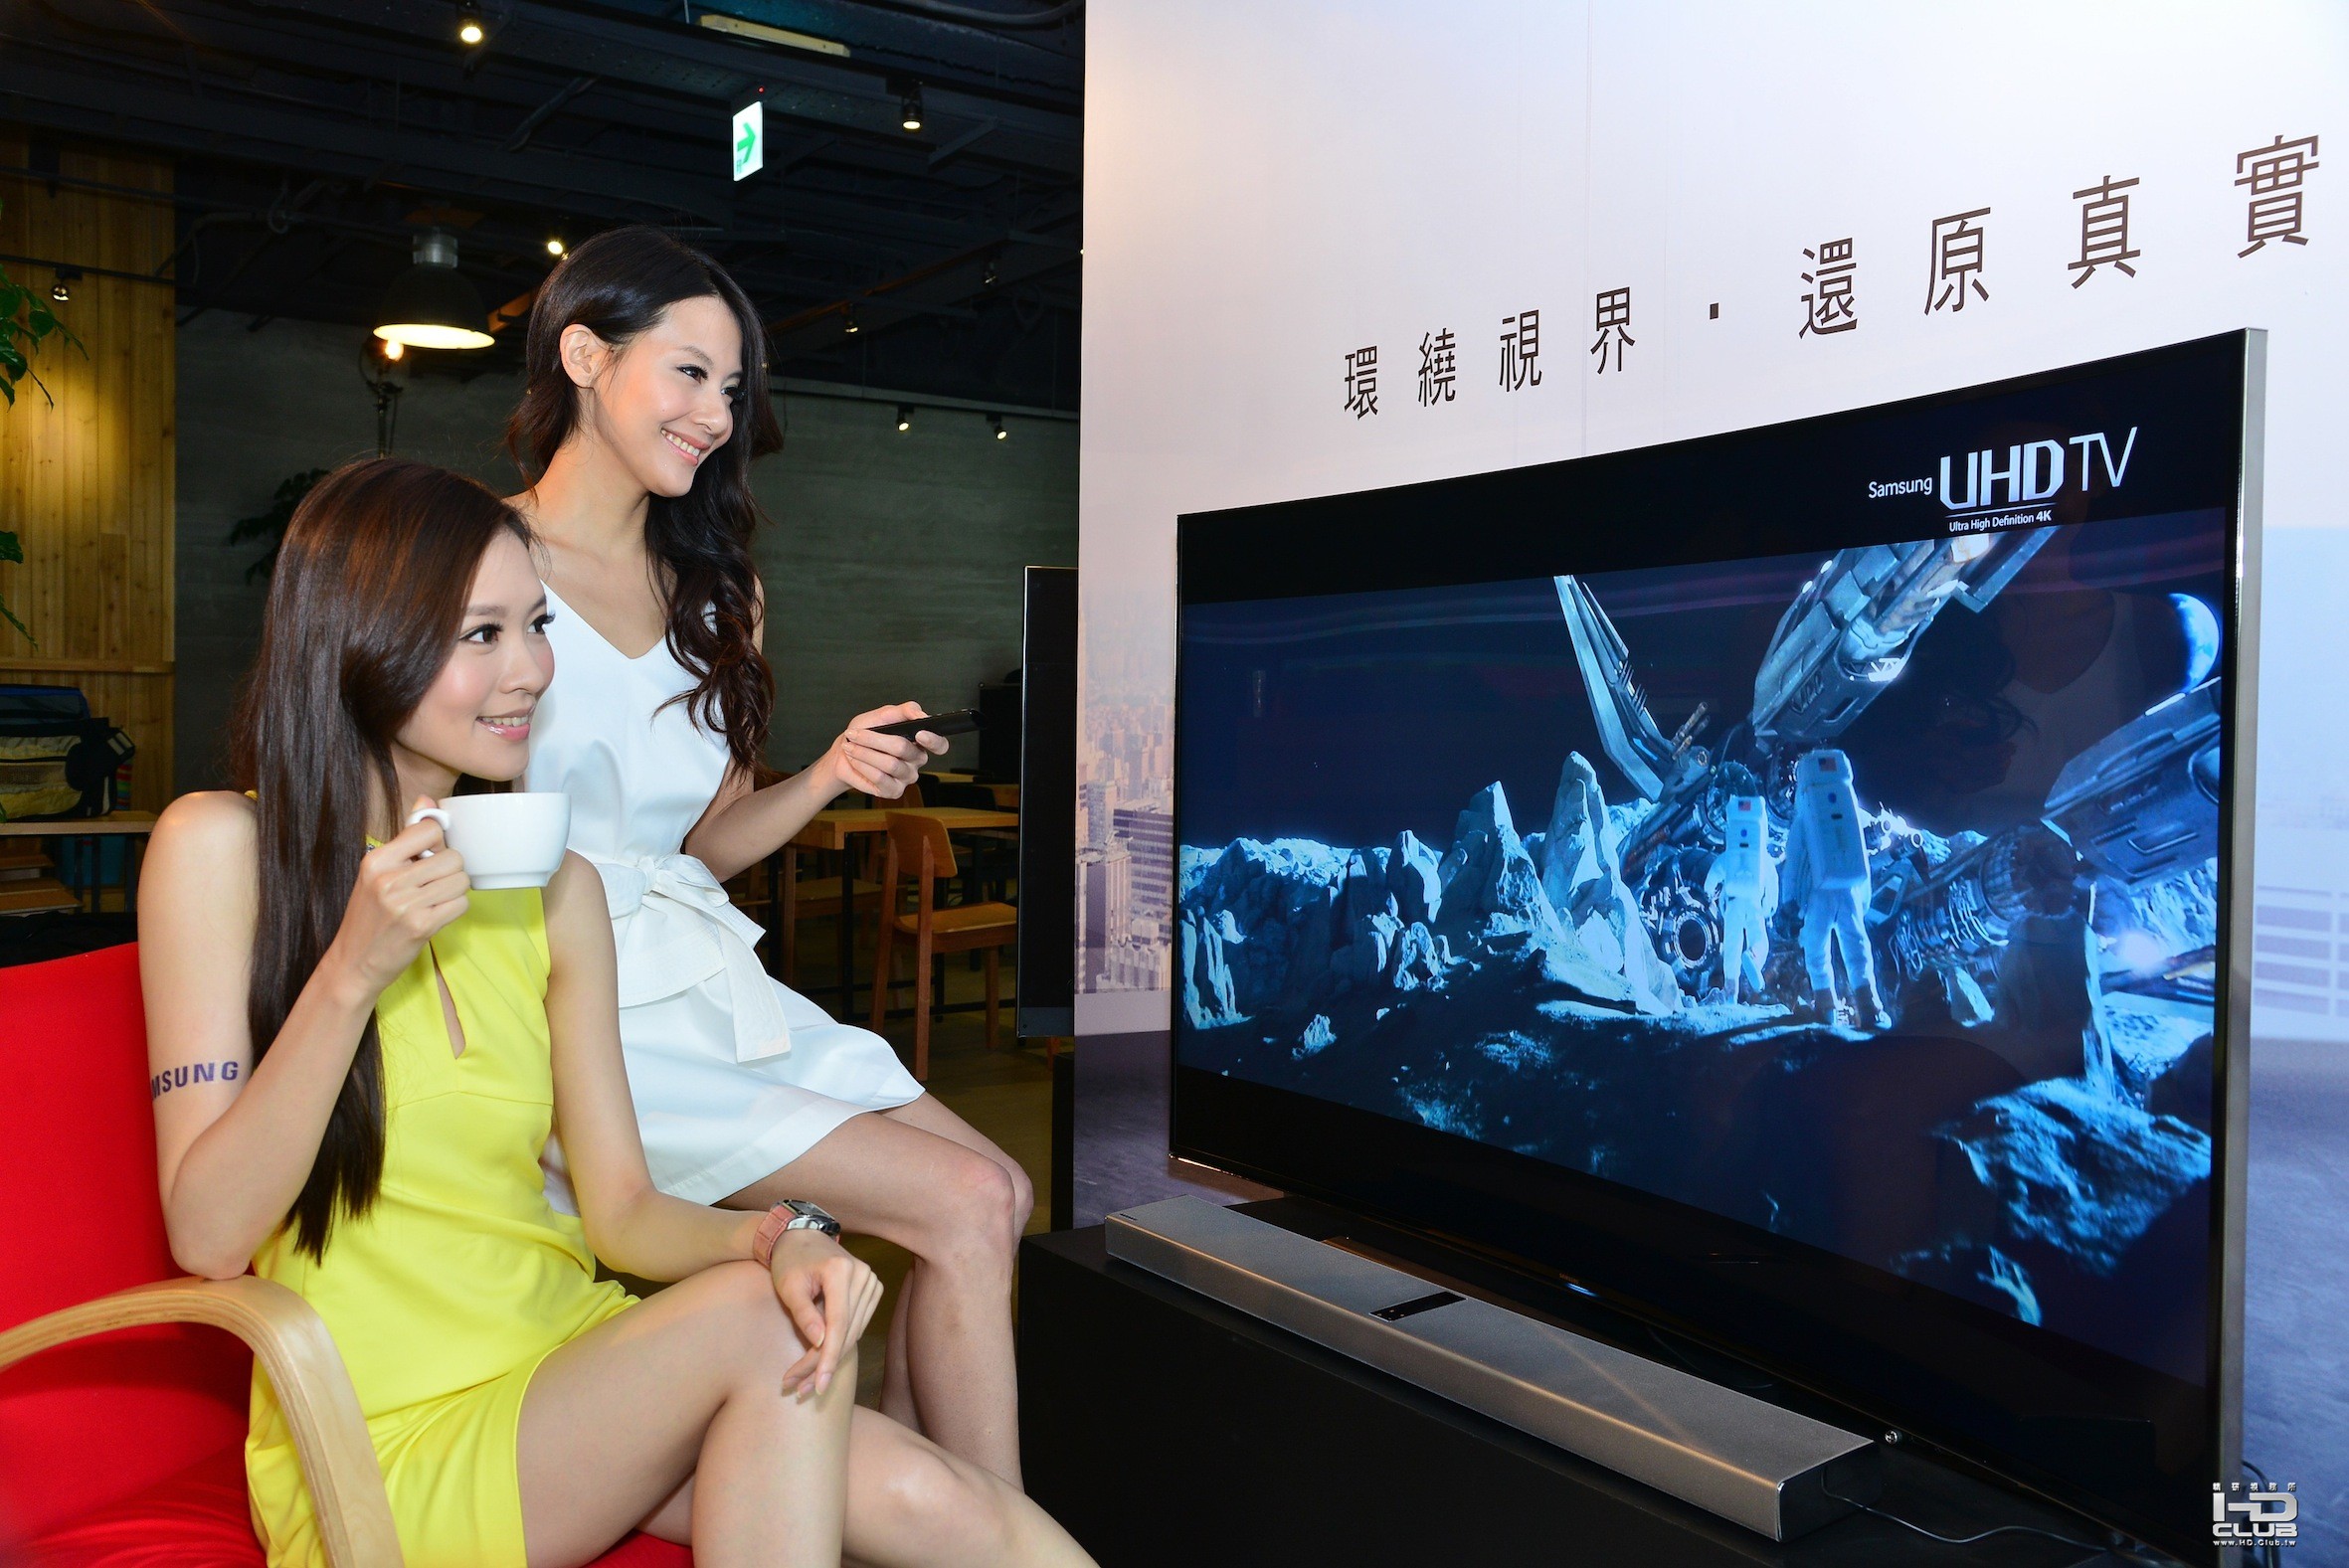 三星4200R黃金曲面UHD TV  給予最舒適的觀賞體驗亦貼近人體自然視線範圍.JPG.jpg